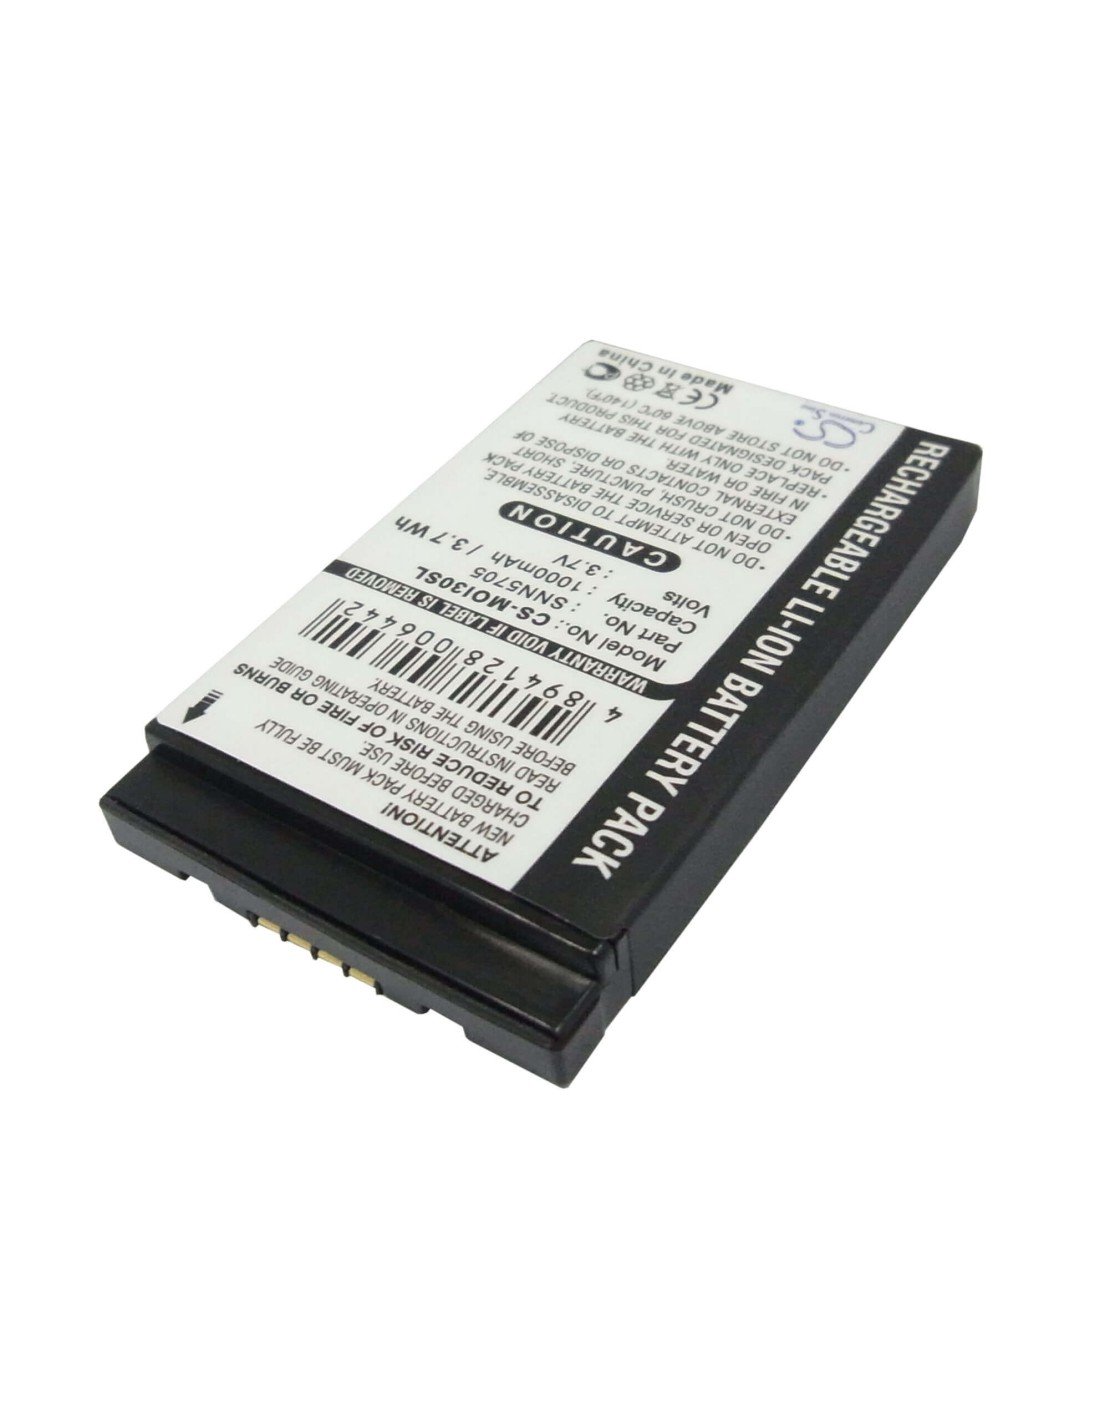 Battery for Motorola i870, i450, i415 3.7V, 1000mAh - 3.70Wh